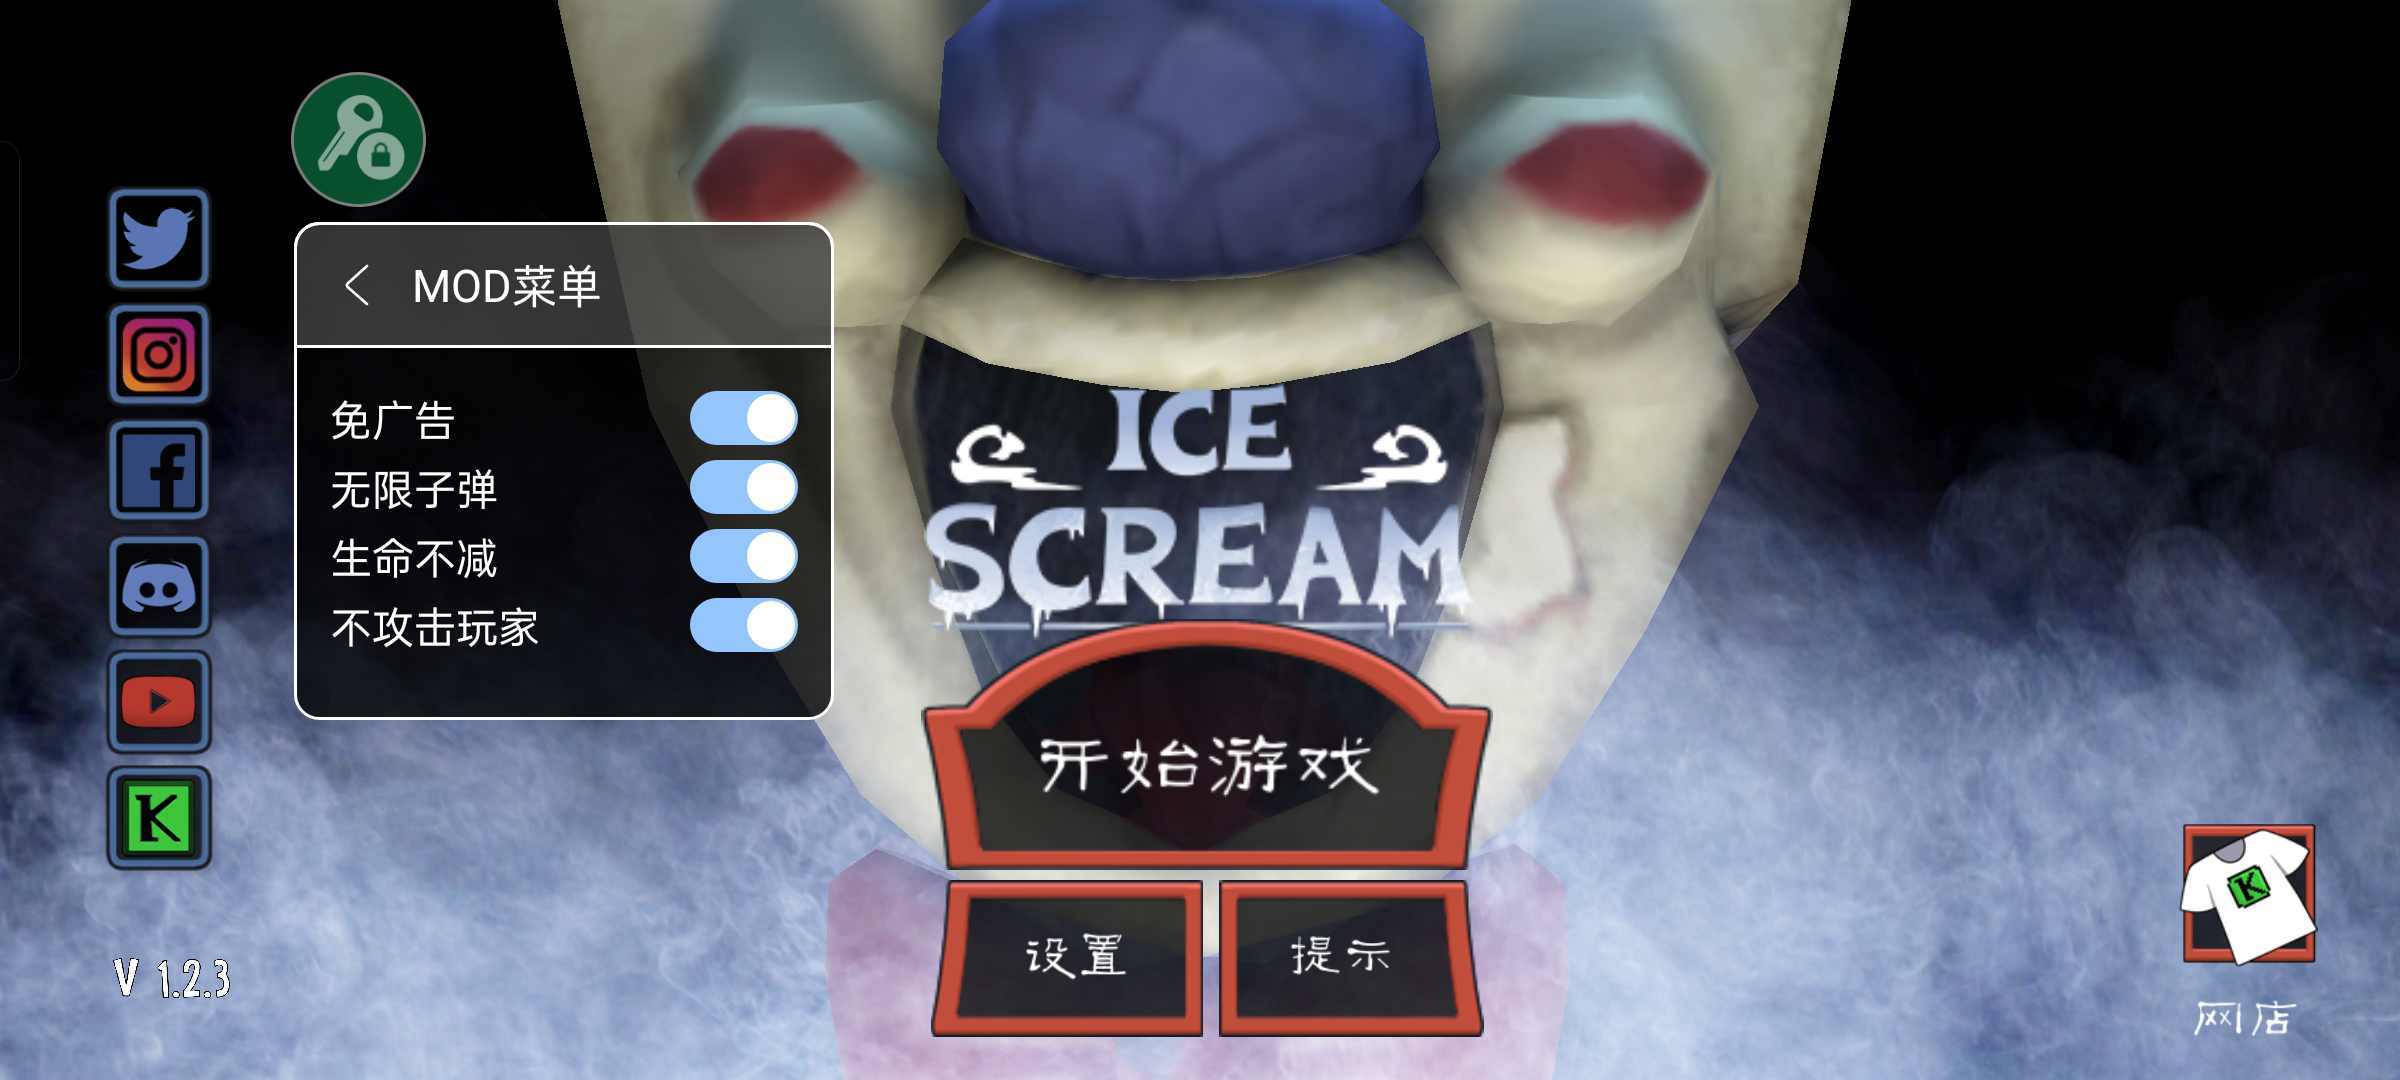 冰淇淋怪人(Ice Scream)